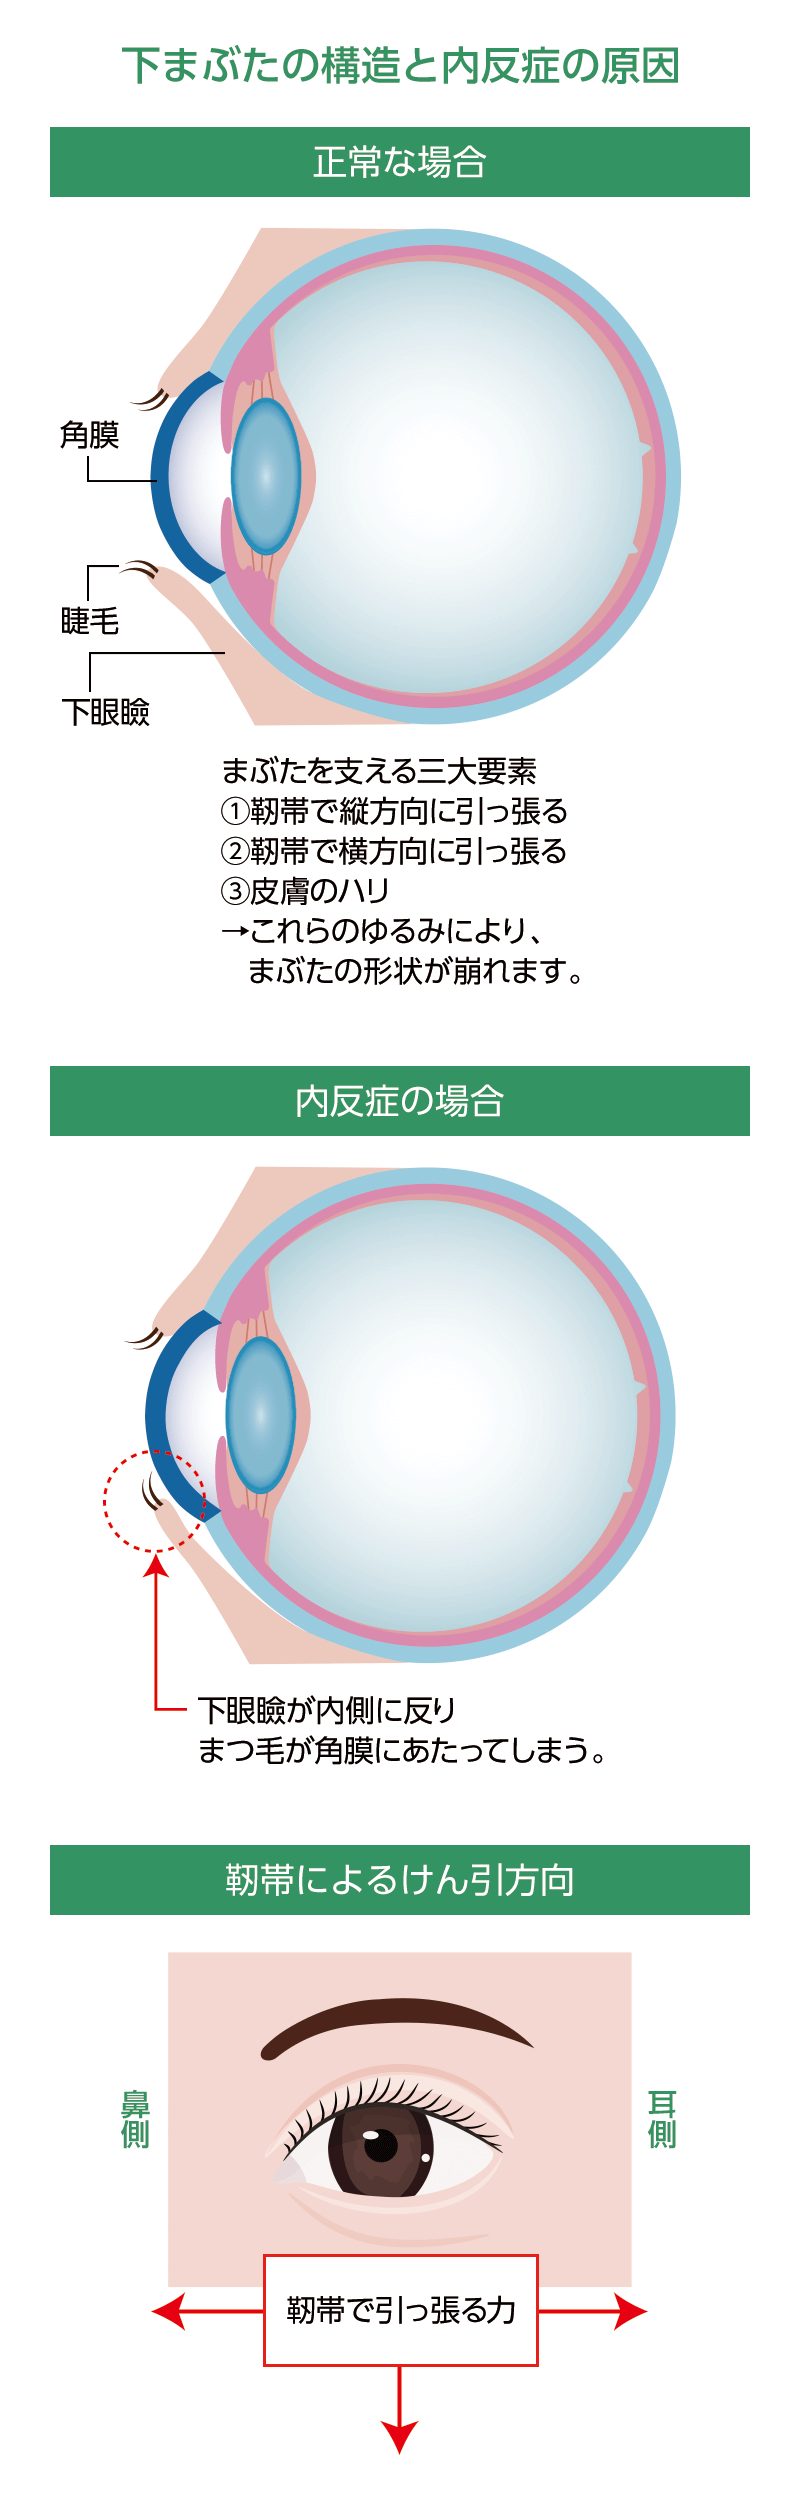 後天性眼瞼内反症